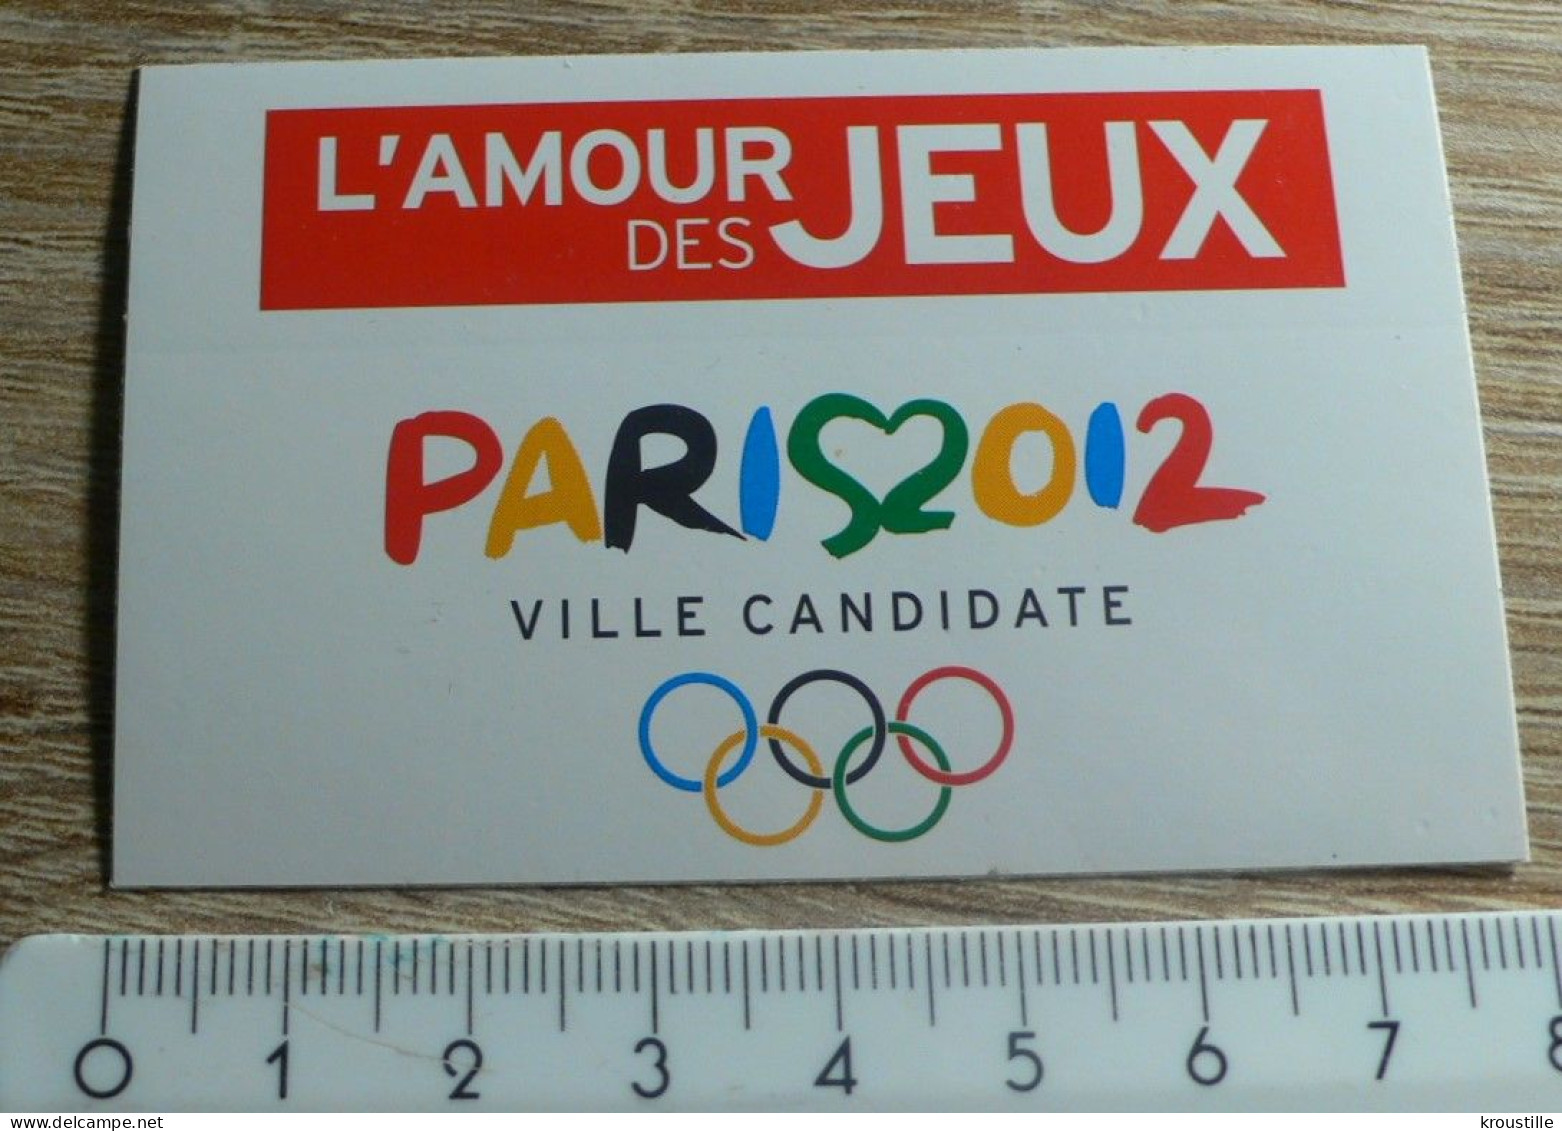 AUTOCOLLANT L'AMOUR DES JEUX - PARIS 2012 - VILLE CANDIDATE JEUX OLYMPIQUES - Autocollants